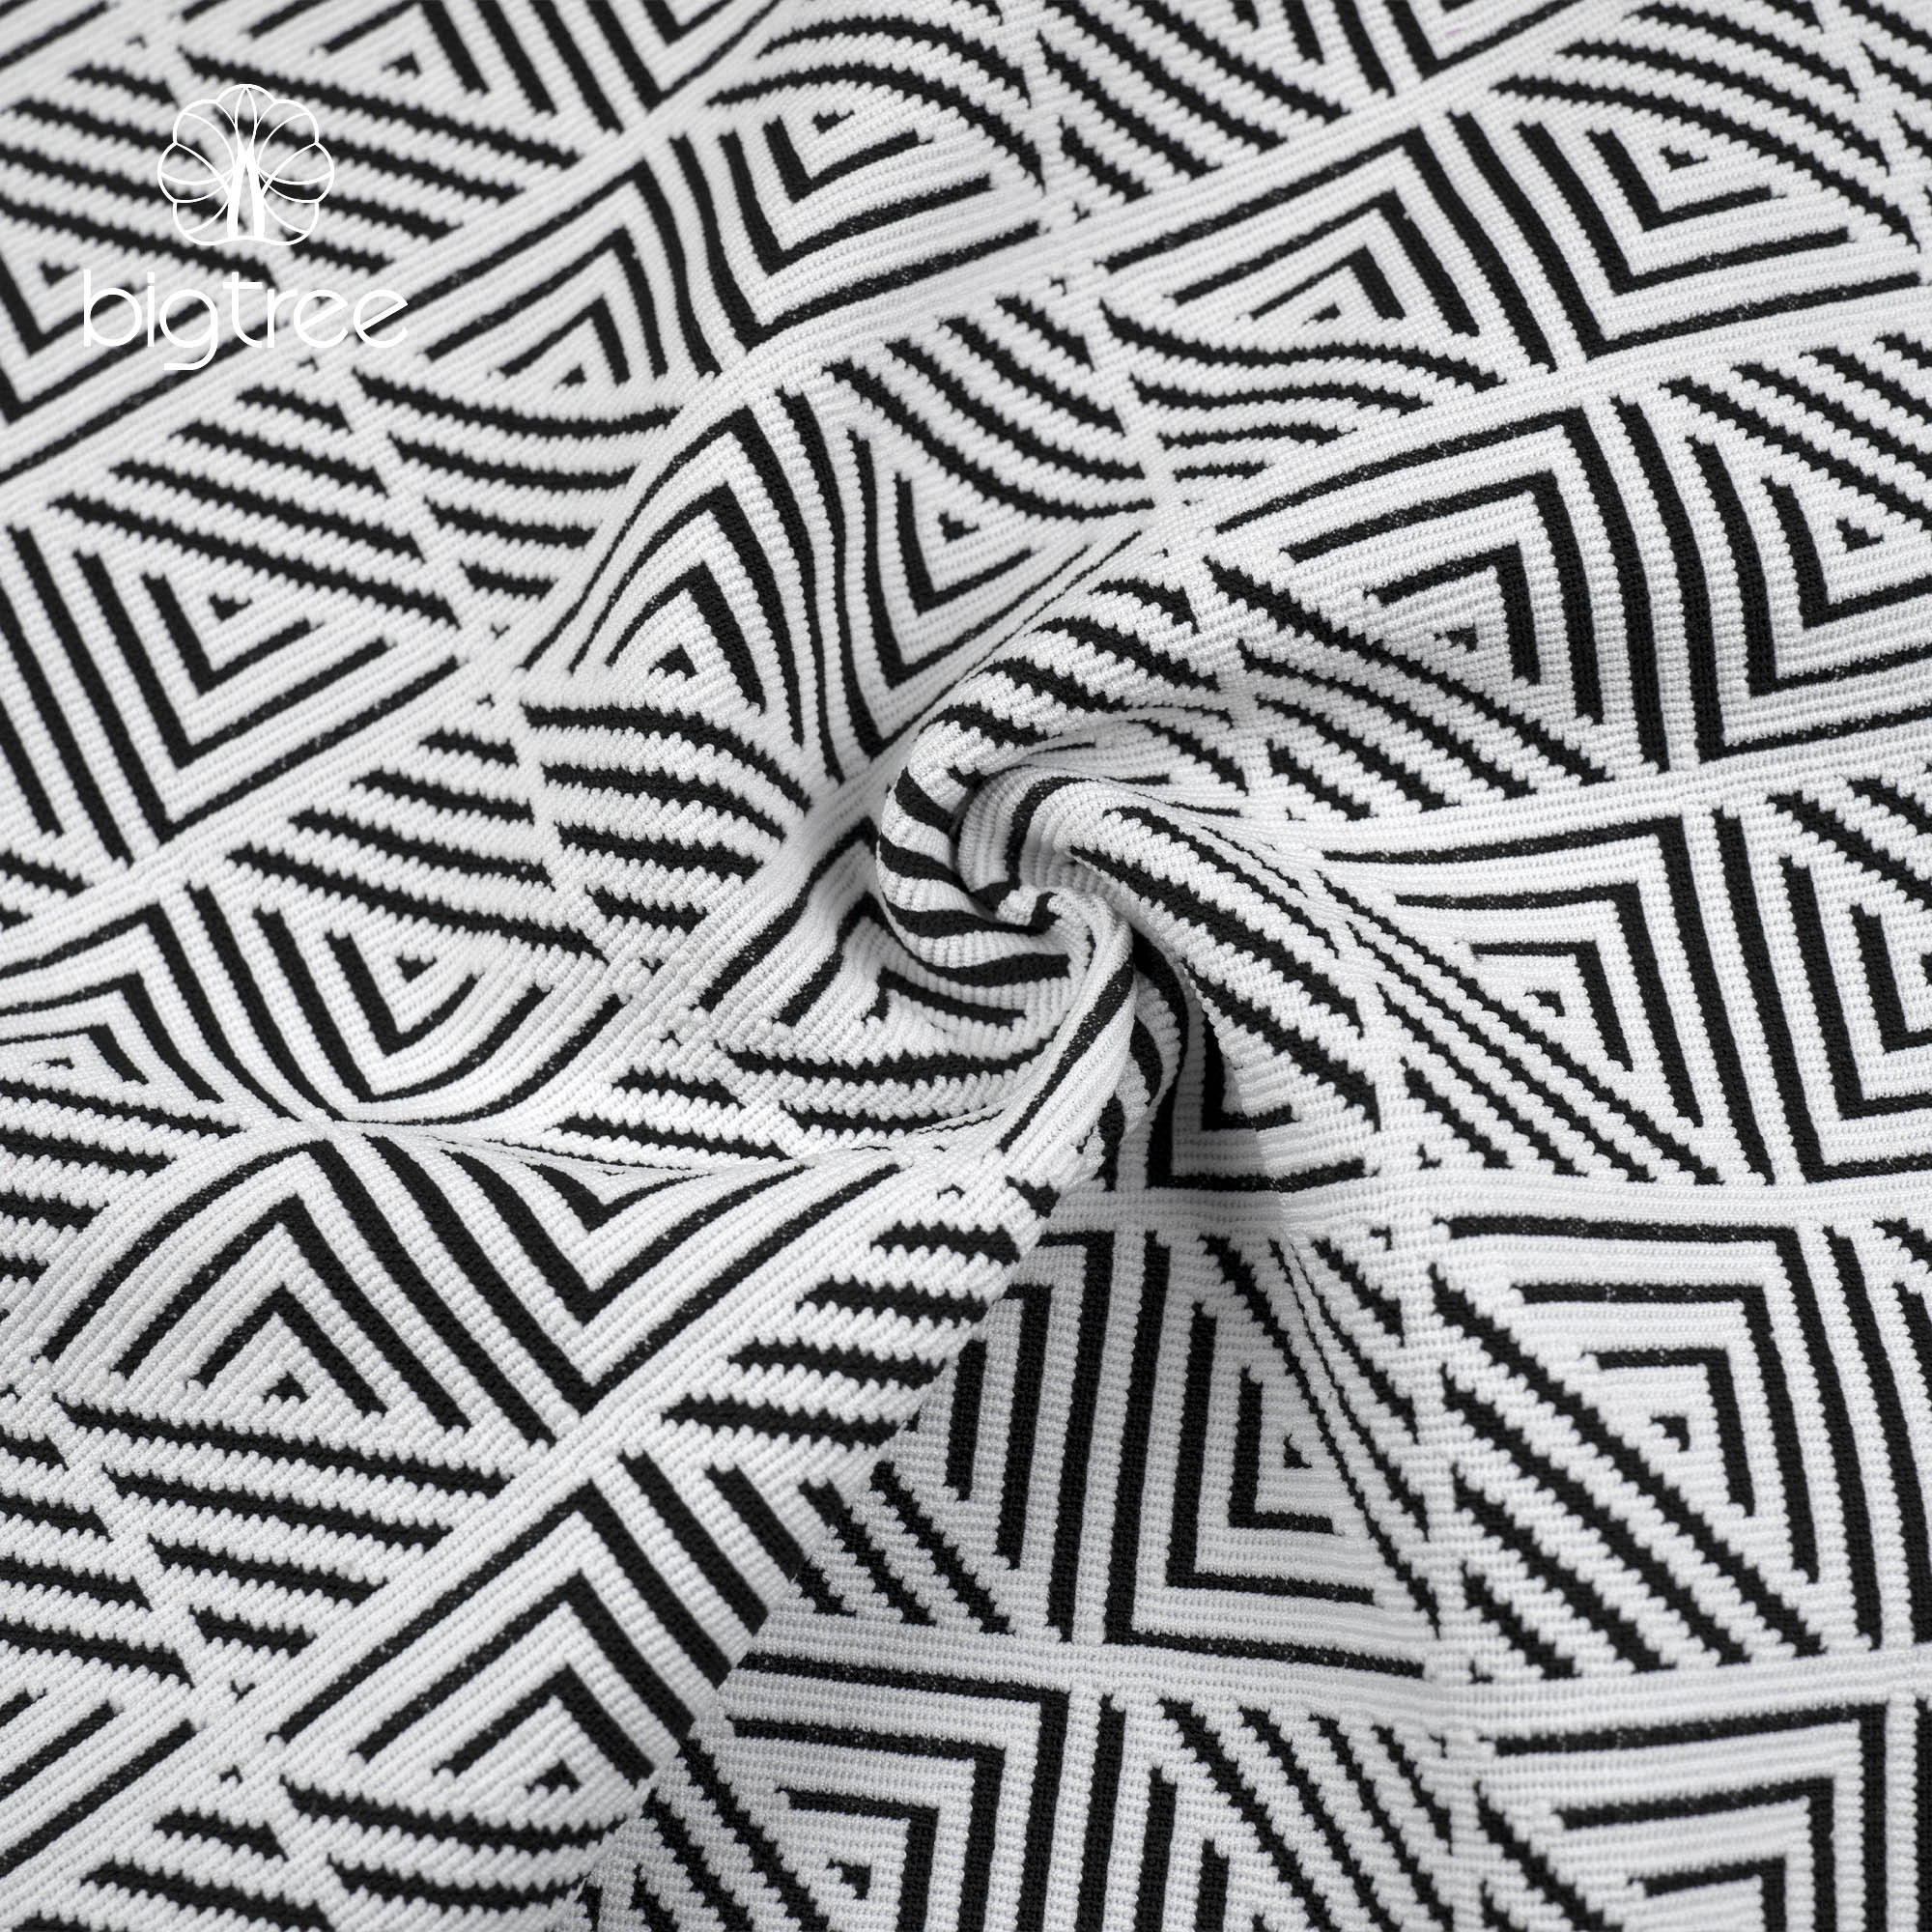 Wholesale Yarn Dyed Jacquard Double Layer Geometrical Coat Jacket  98%Polyester 2%Spandex Fabric